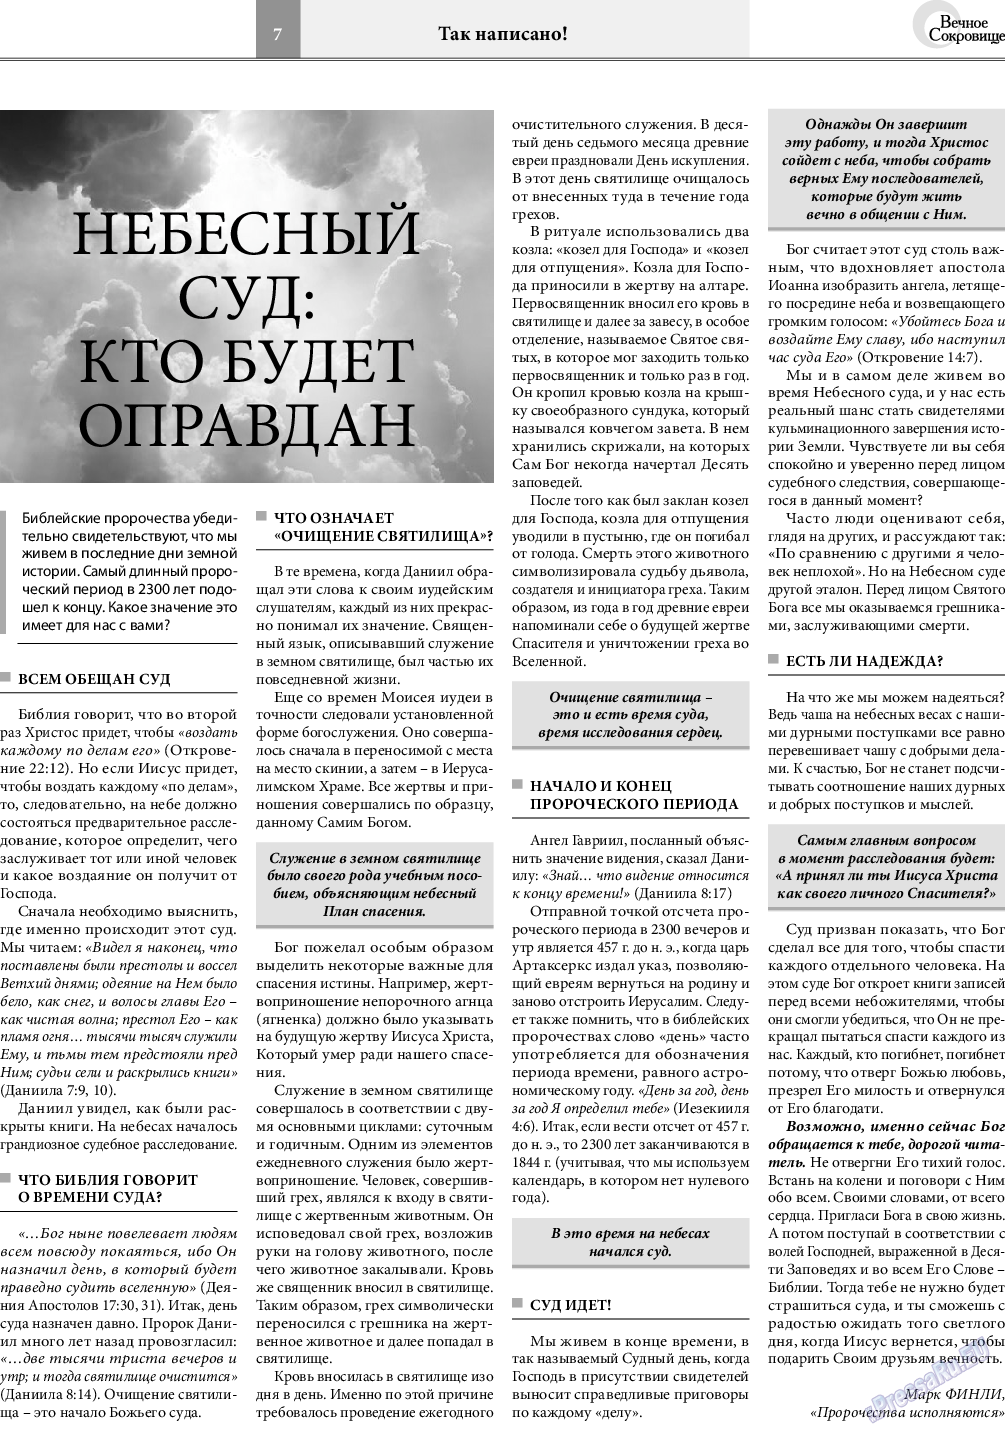 Вечное сокровище (газета). 2020 год, номер 5, стр. 7